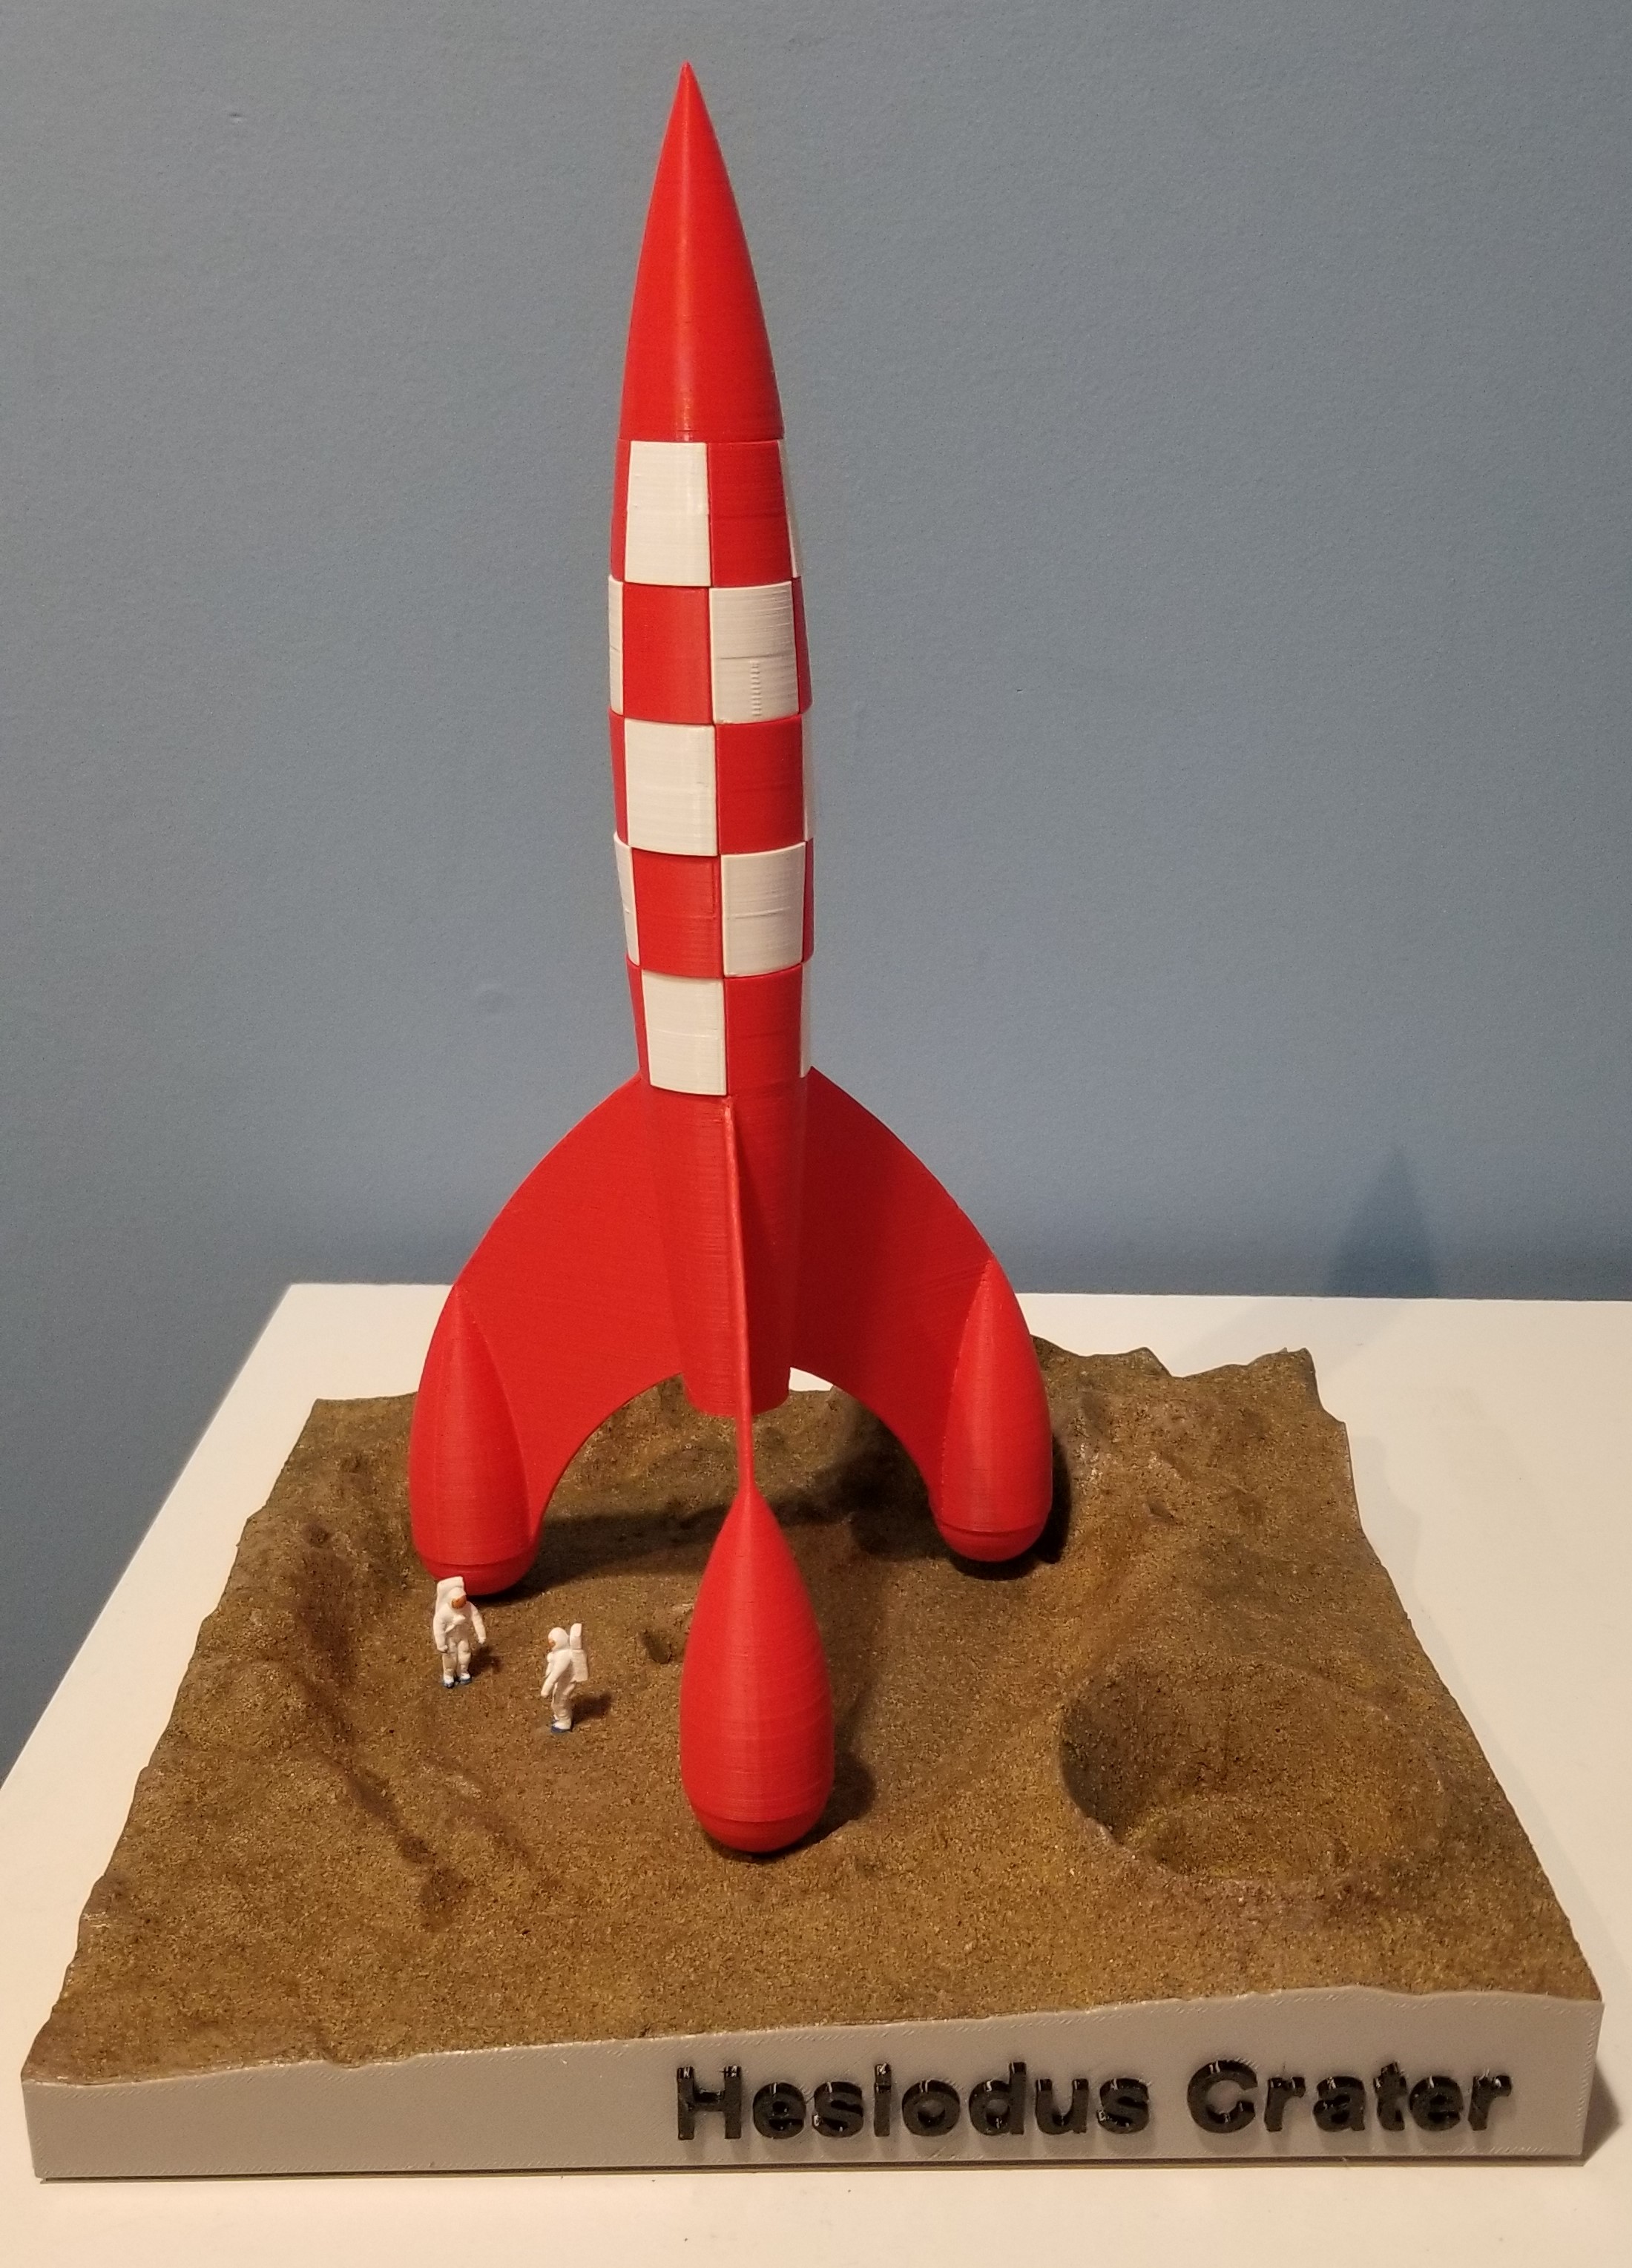 Fusée Tintin sur la lune - 3D model by Fr3d3r1c on Thangs